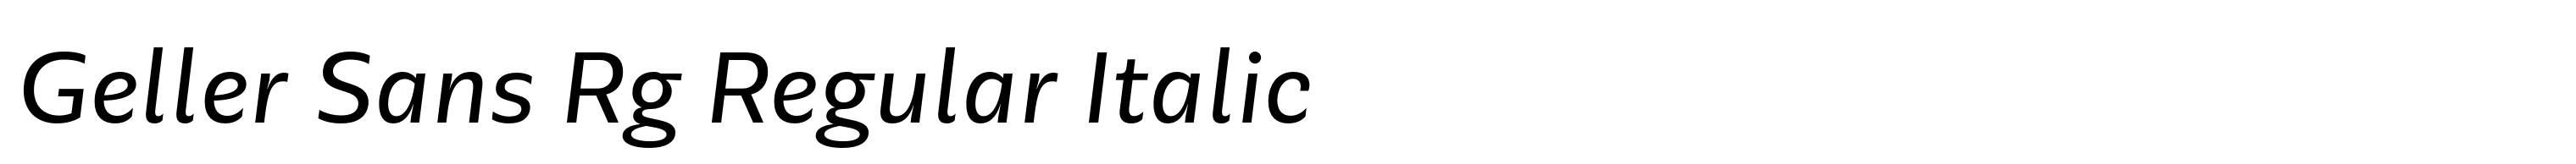 Geller Sans Rg Regular Italic